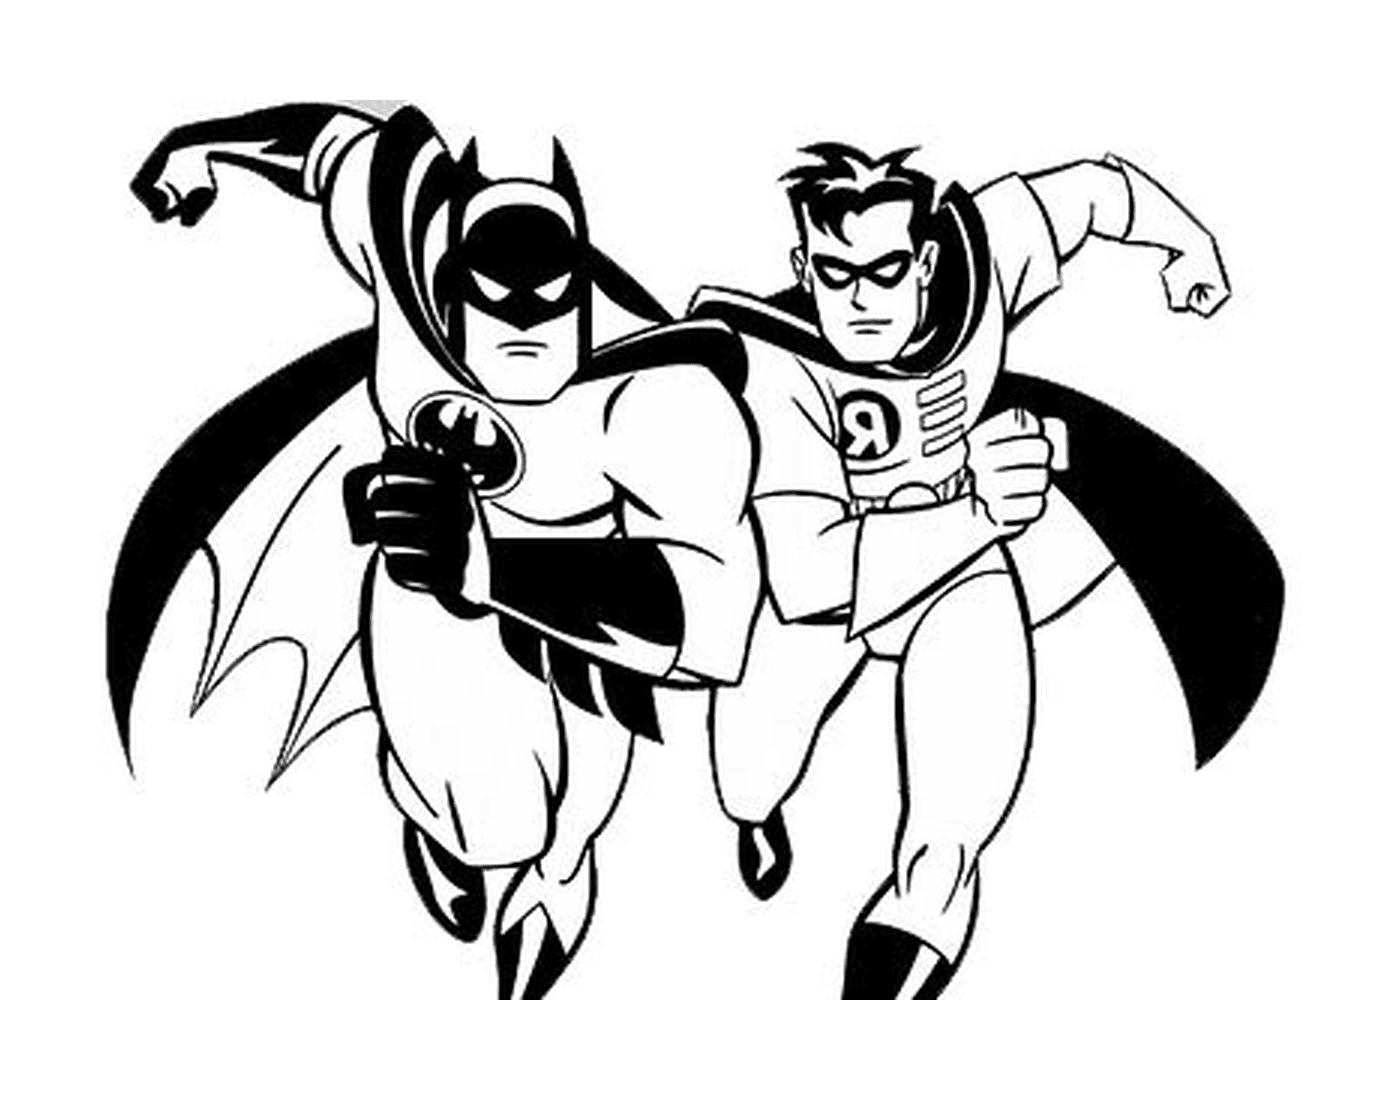  باتمان وروبن 